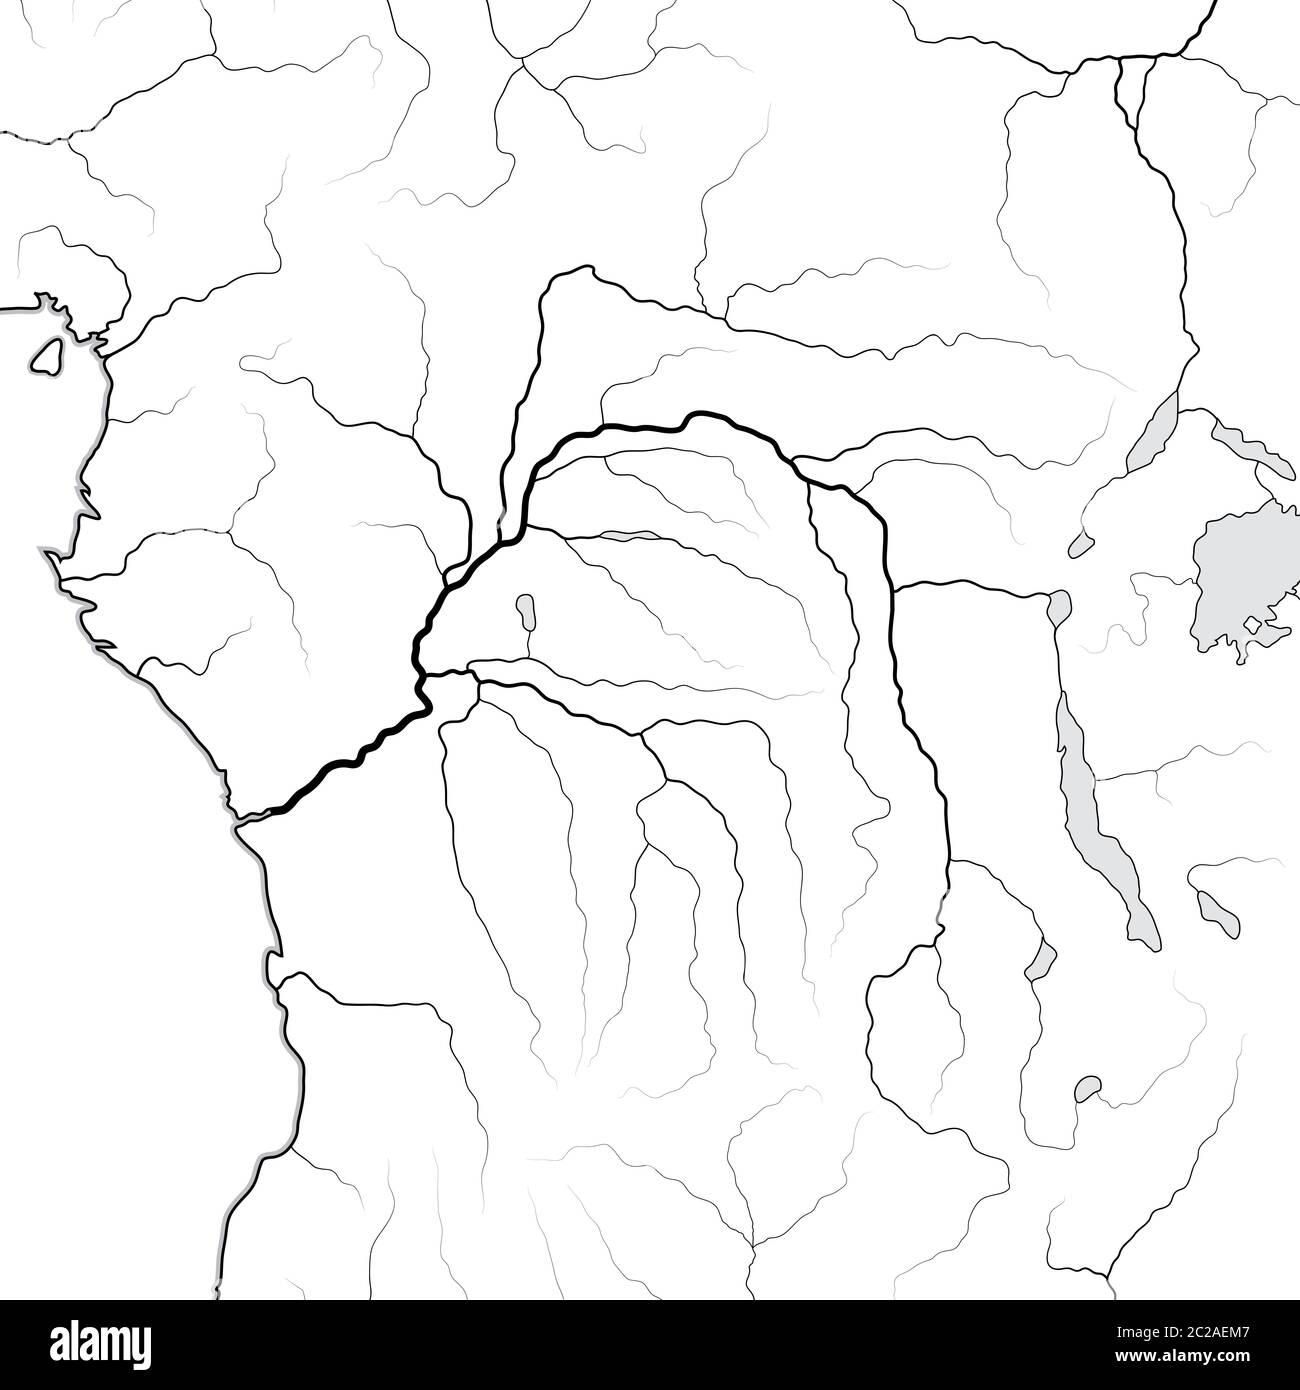 Carte du monde du bassin DU CONGO: Afrique centrale équatoriale, Congo, Kongo, Zaïre. Carte géographique. Banque D'Images